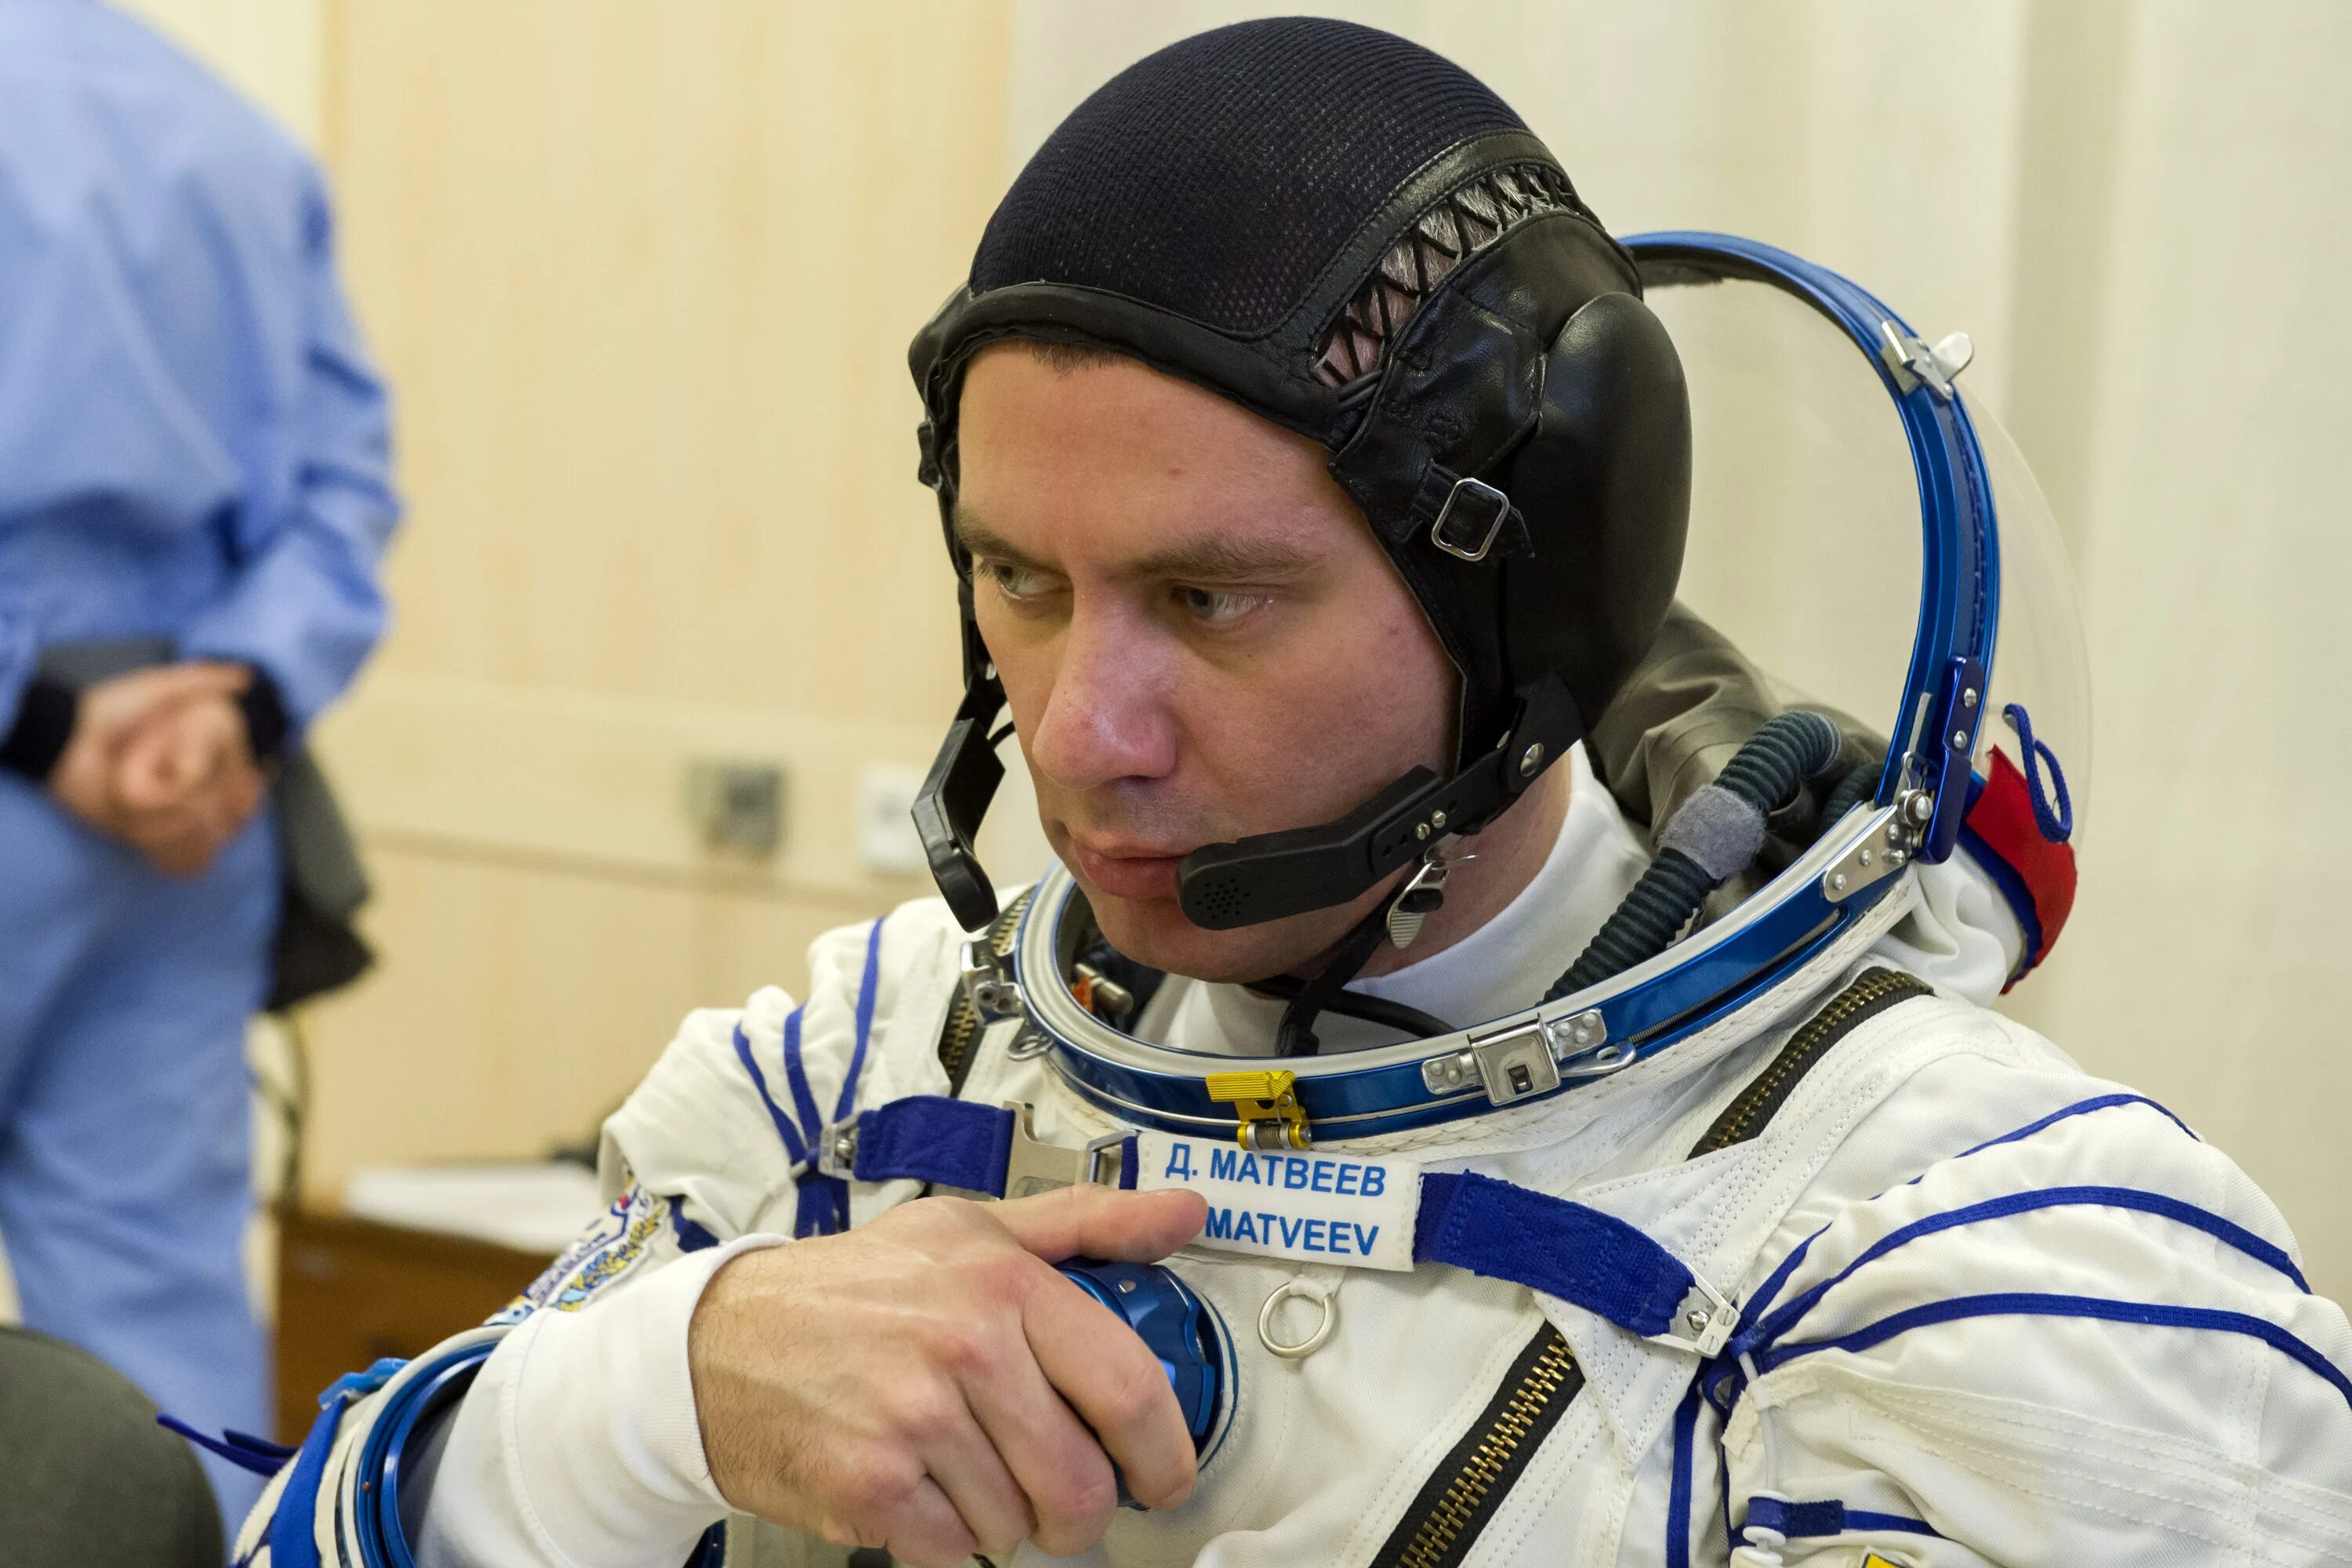 Первый российский космонавт вышедший в открытый космос. Выход Леонова в открытый космос. Фото Космонавта Матвеева.